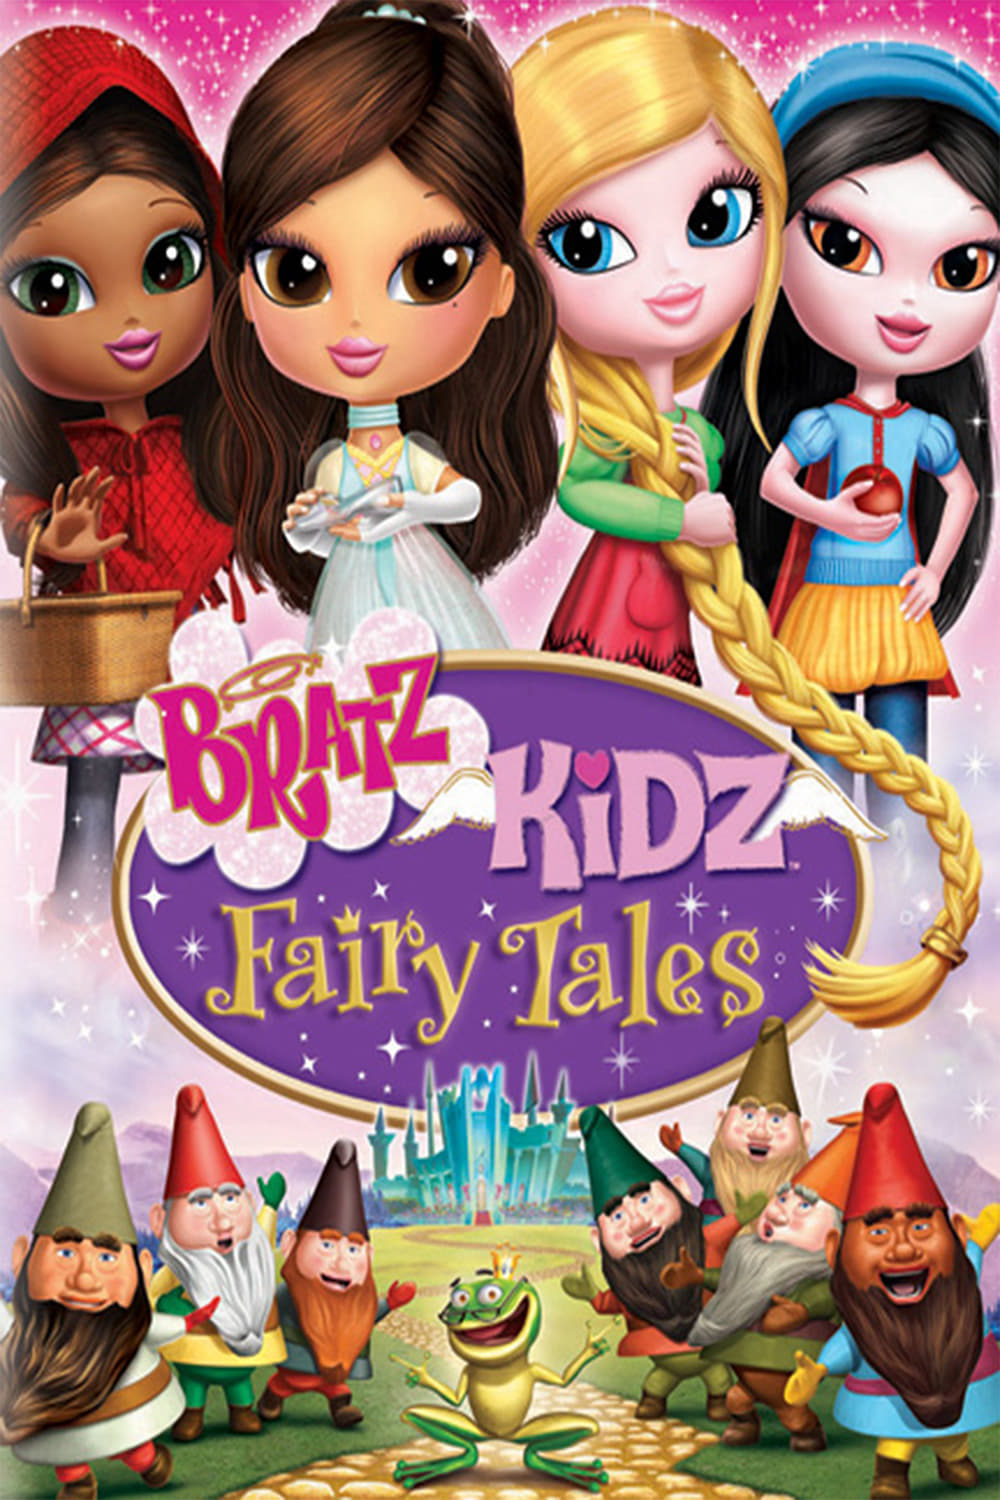 دانلود صوت دوبله انیمیشن Bratz Kidz Fairy Tales